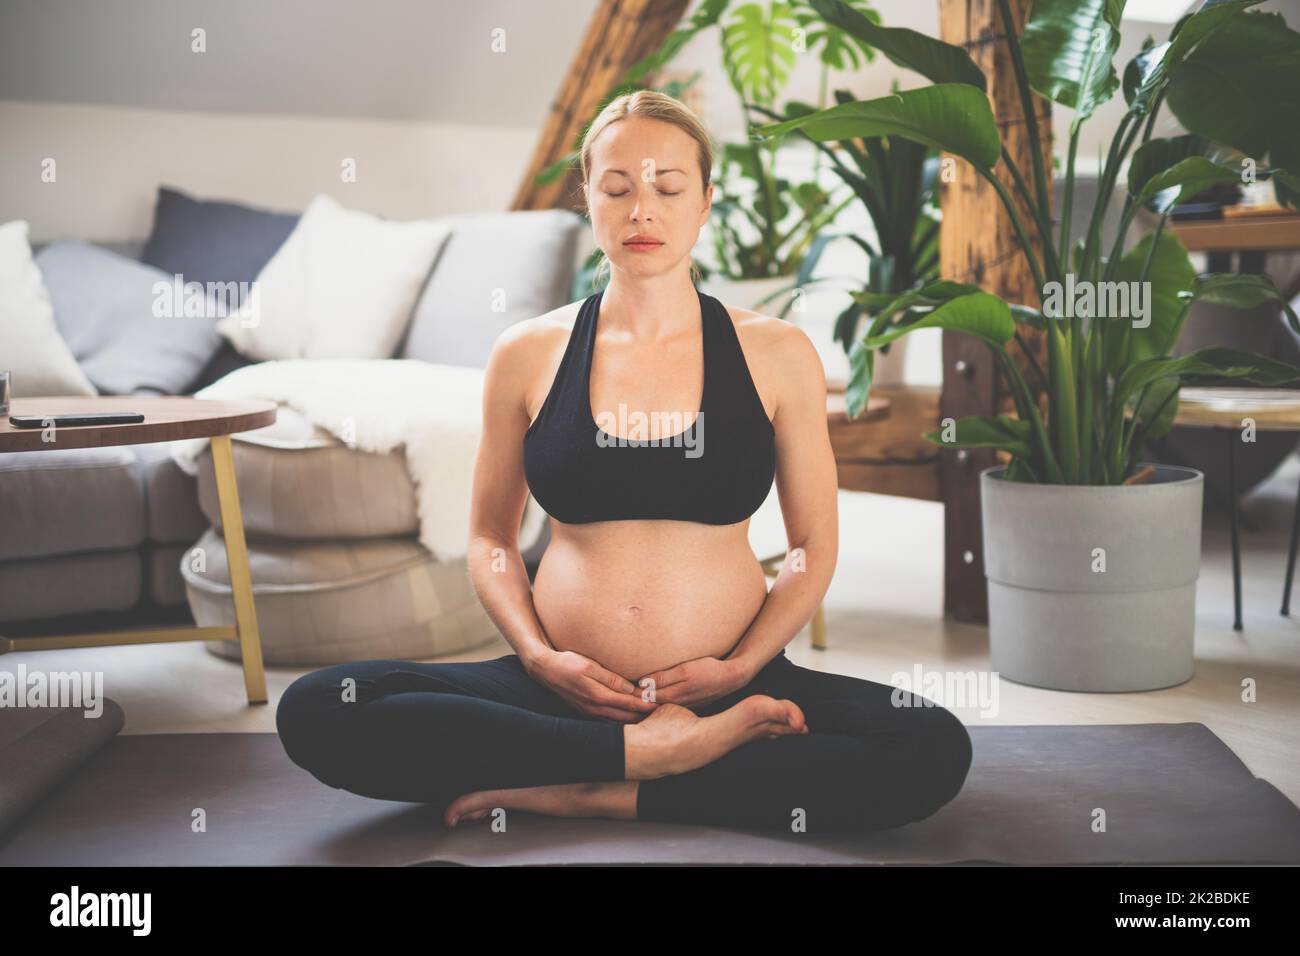 Junge, schöne, schwangere Frau, die Yoga trainiert, ihren Bauch streichelt. Junge, fröhlich, erwartungsvoll, entspannt, denkt an ihr Baby und genießt ihr zukünftiges Leben. Mutterschaft, Schwangerschaft, Yoga-Konzept. Stockfoto